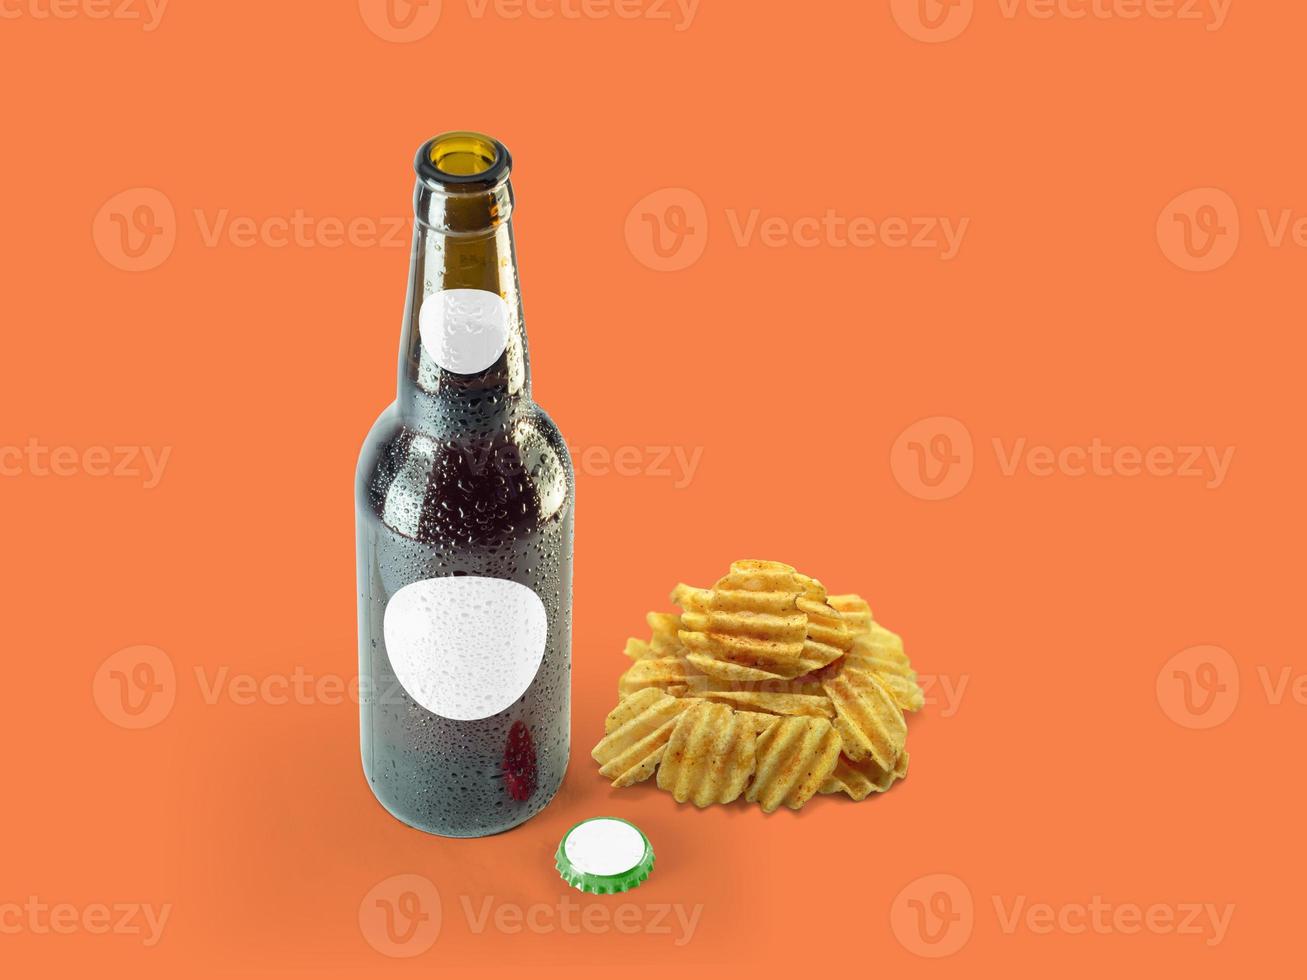 Kartoffelchipsnacks und braune Flasche auf farbigem Hintergrund isoliert. Oktoberfest-Konzept. foto